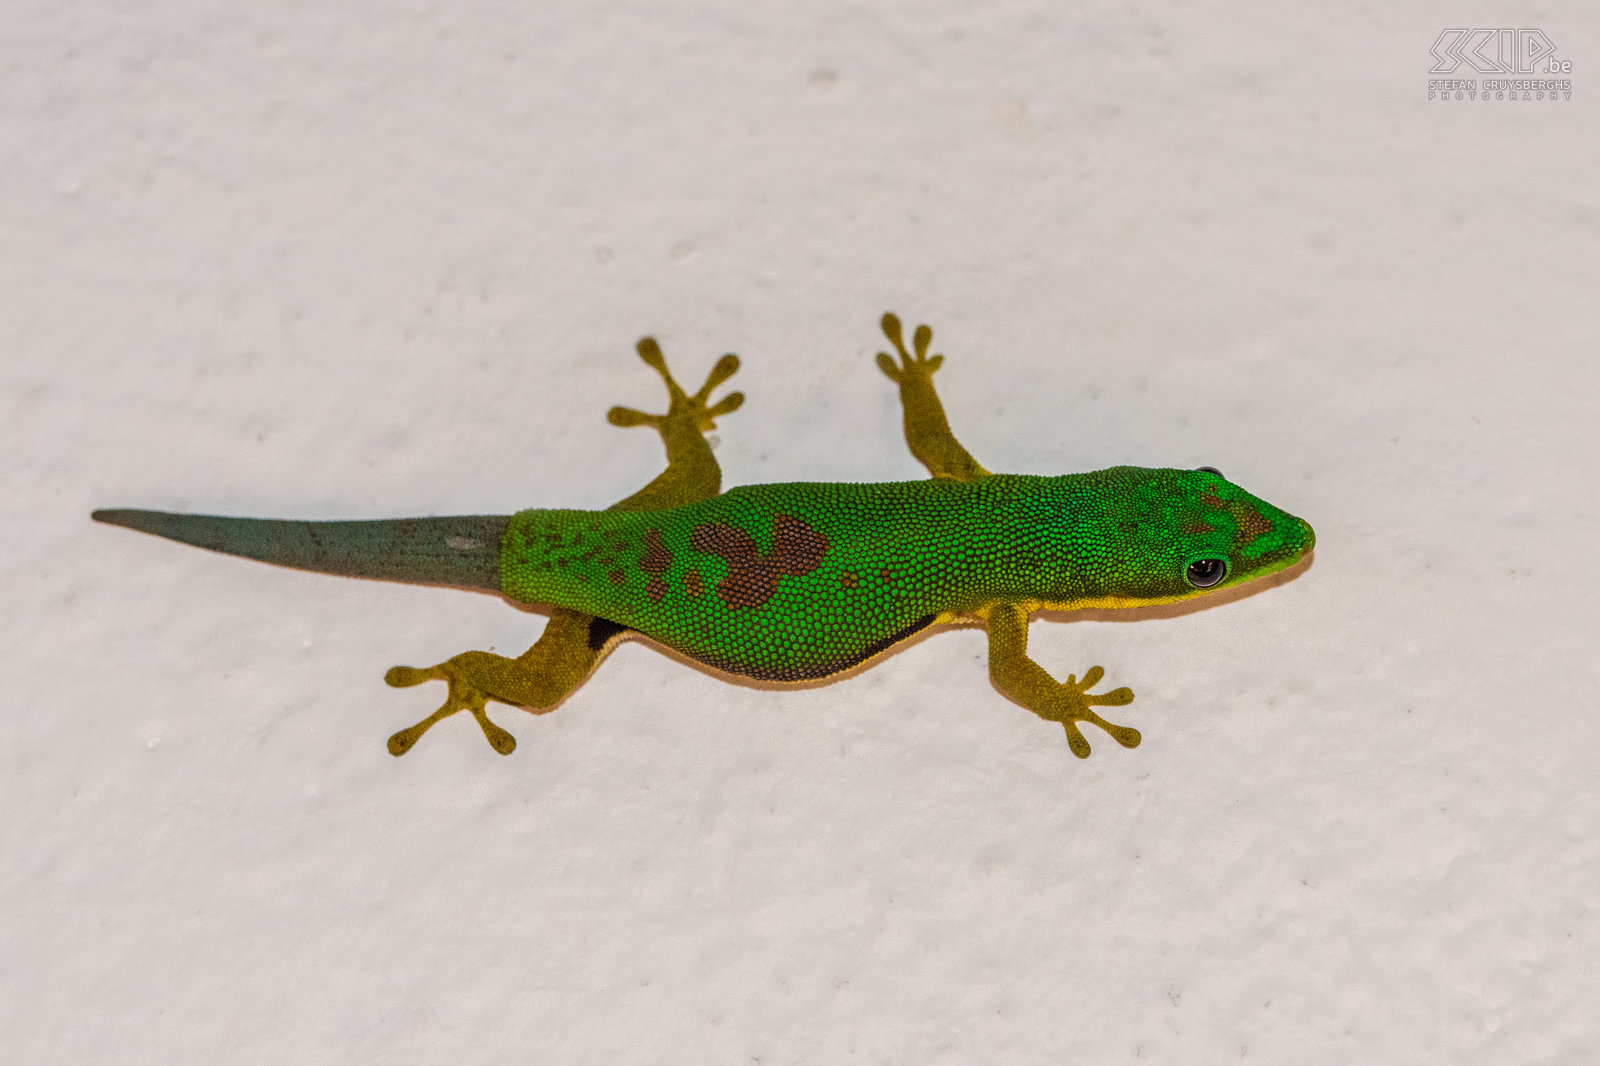 Ranomafana - Gestreepte daggekko De veel voorkomende en kleurrijke gestreepte daggekko (Lined day gecko, Phelsuma lineata). Stefan Cruysberghs